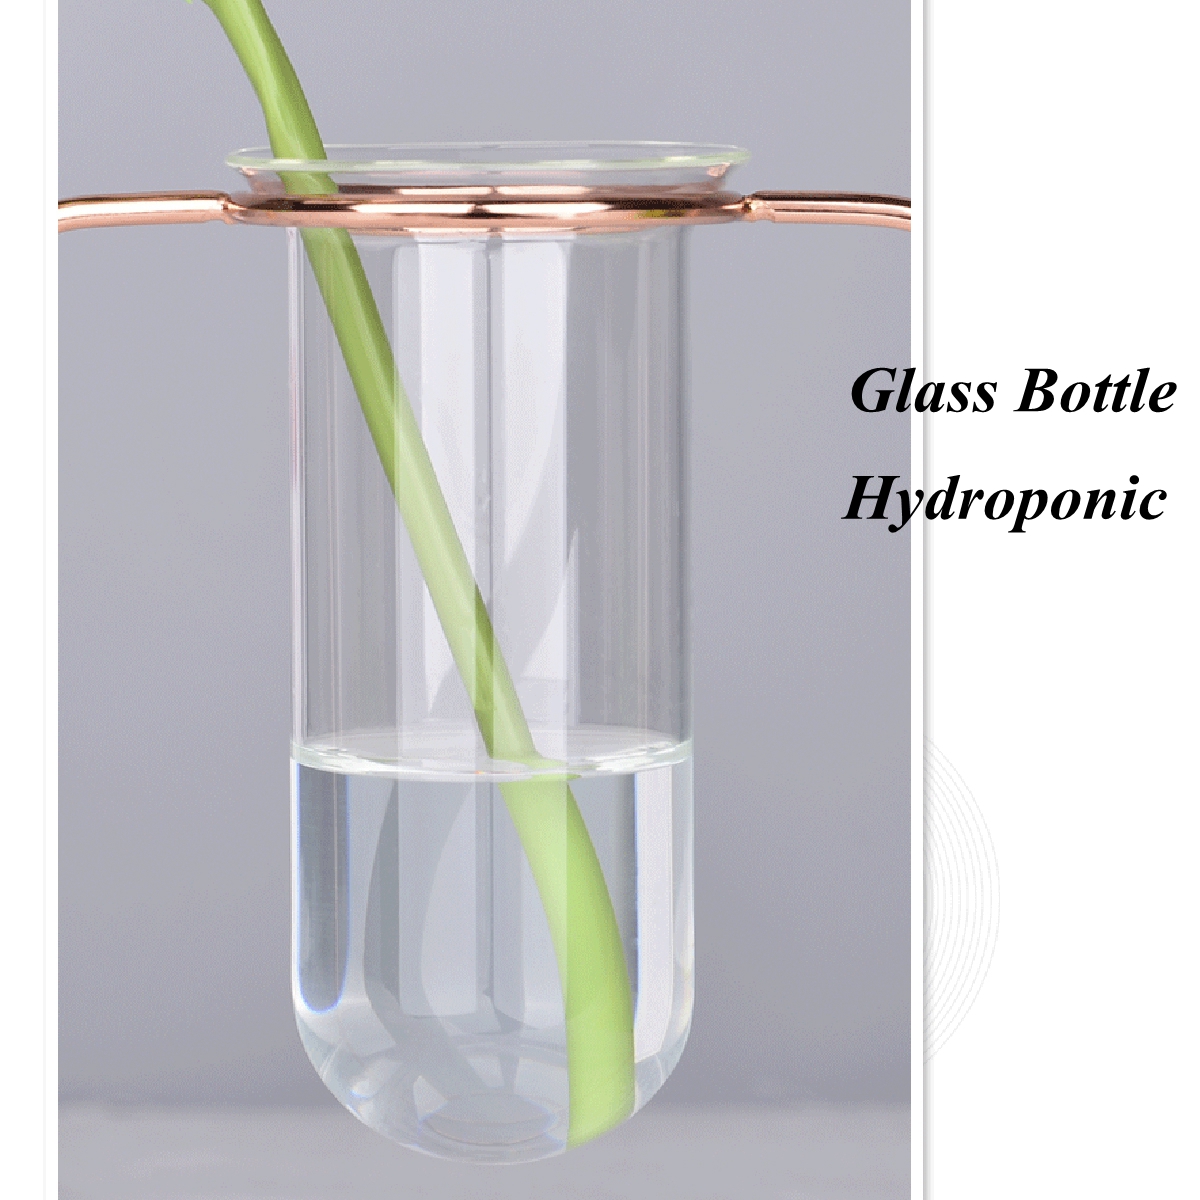 Glass-Test-Tube-Glass-Vase-Pot-Container-Holder-Plants-Flowers-Desk-Decor-Gift-1691579-6